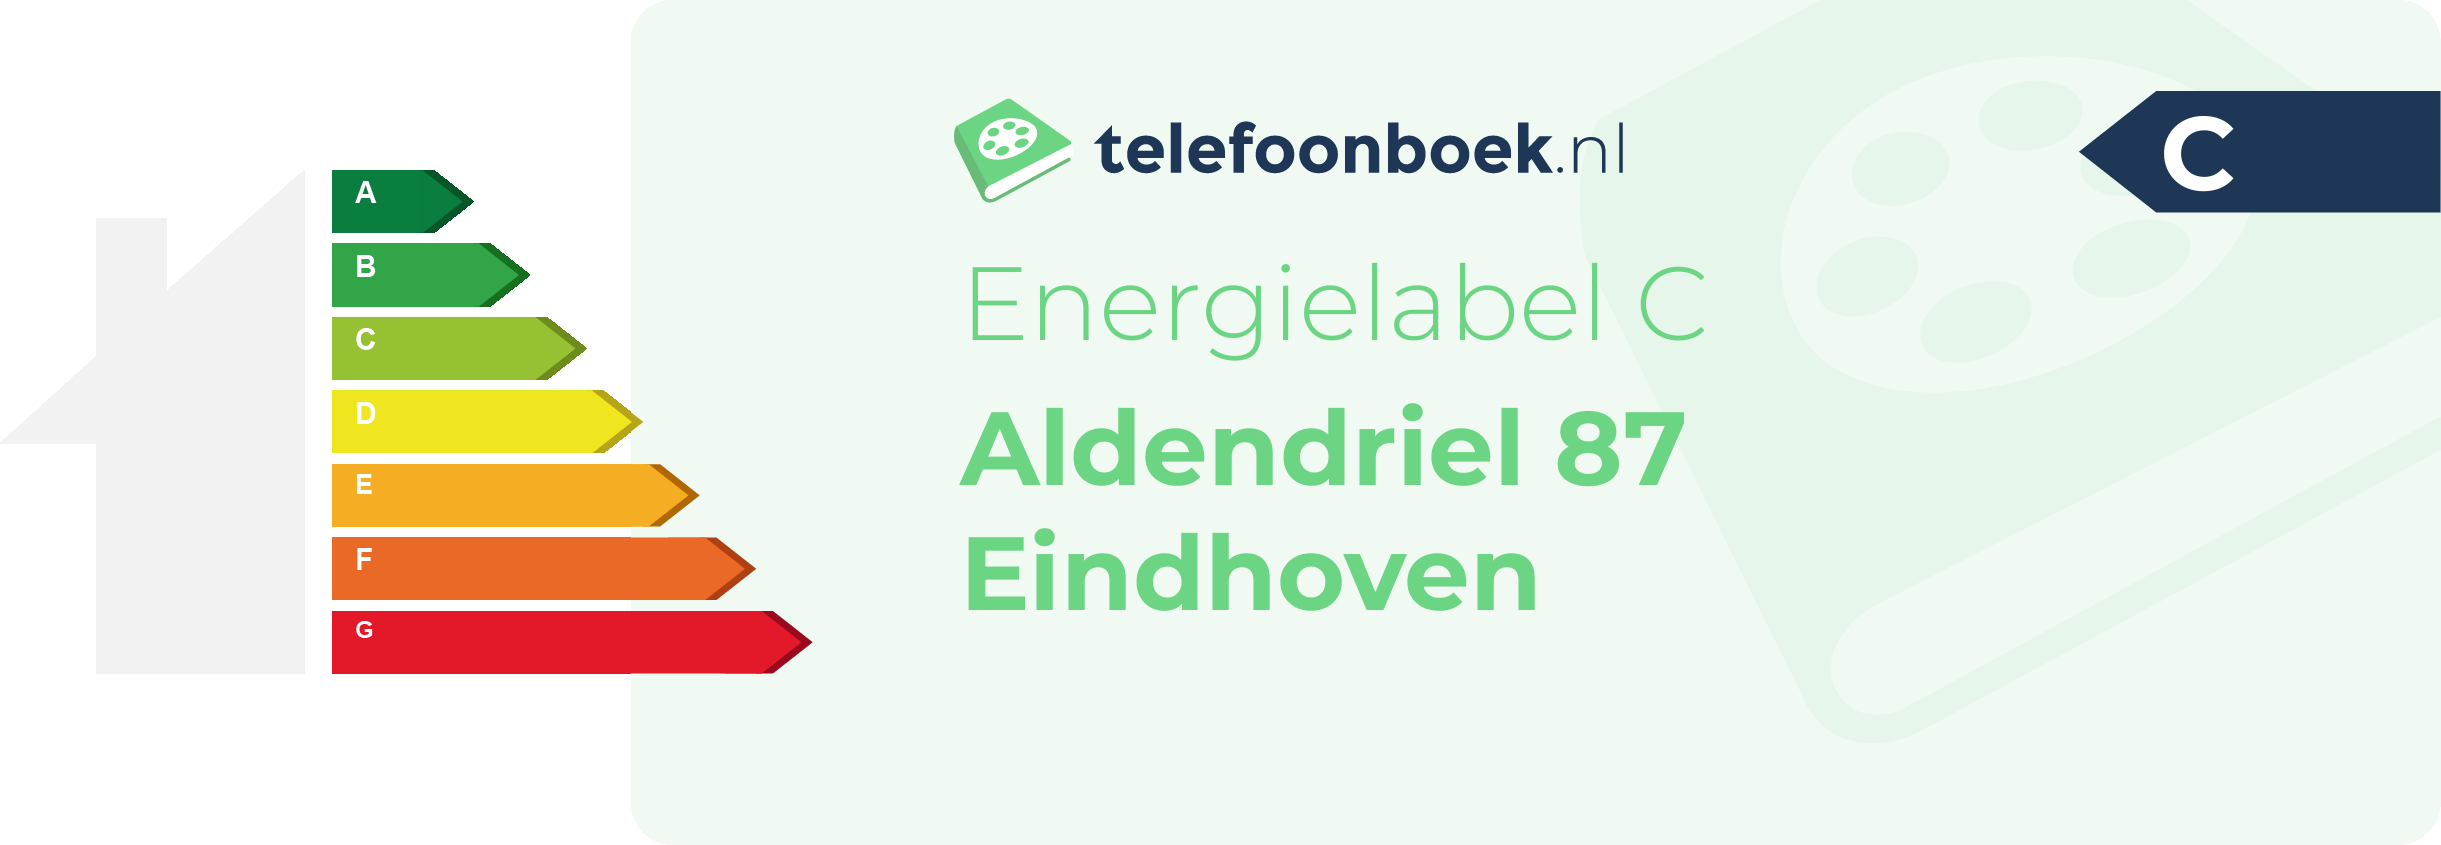 Energielabel Aldendriel 87 Eindhoven